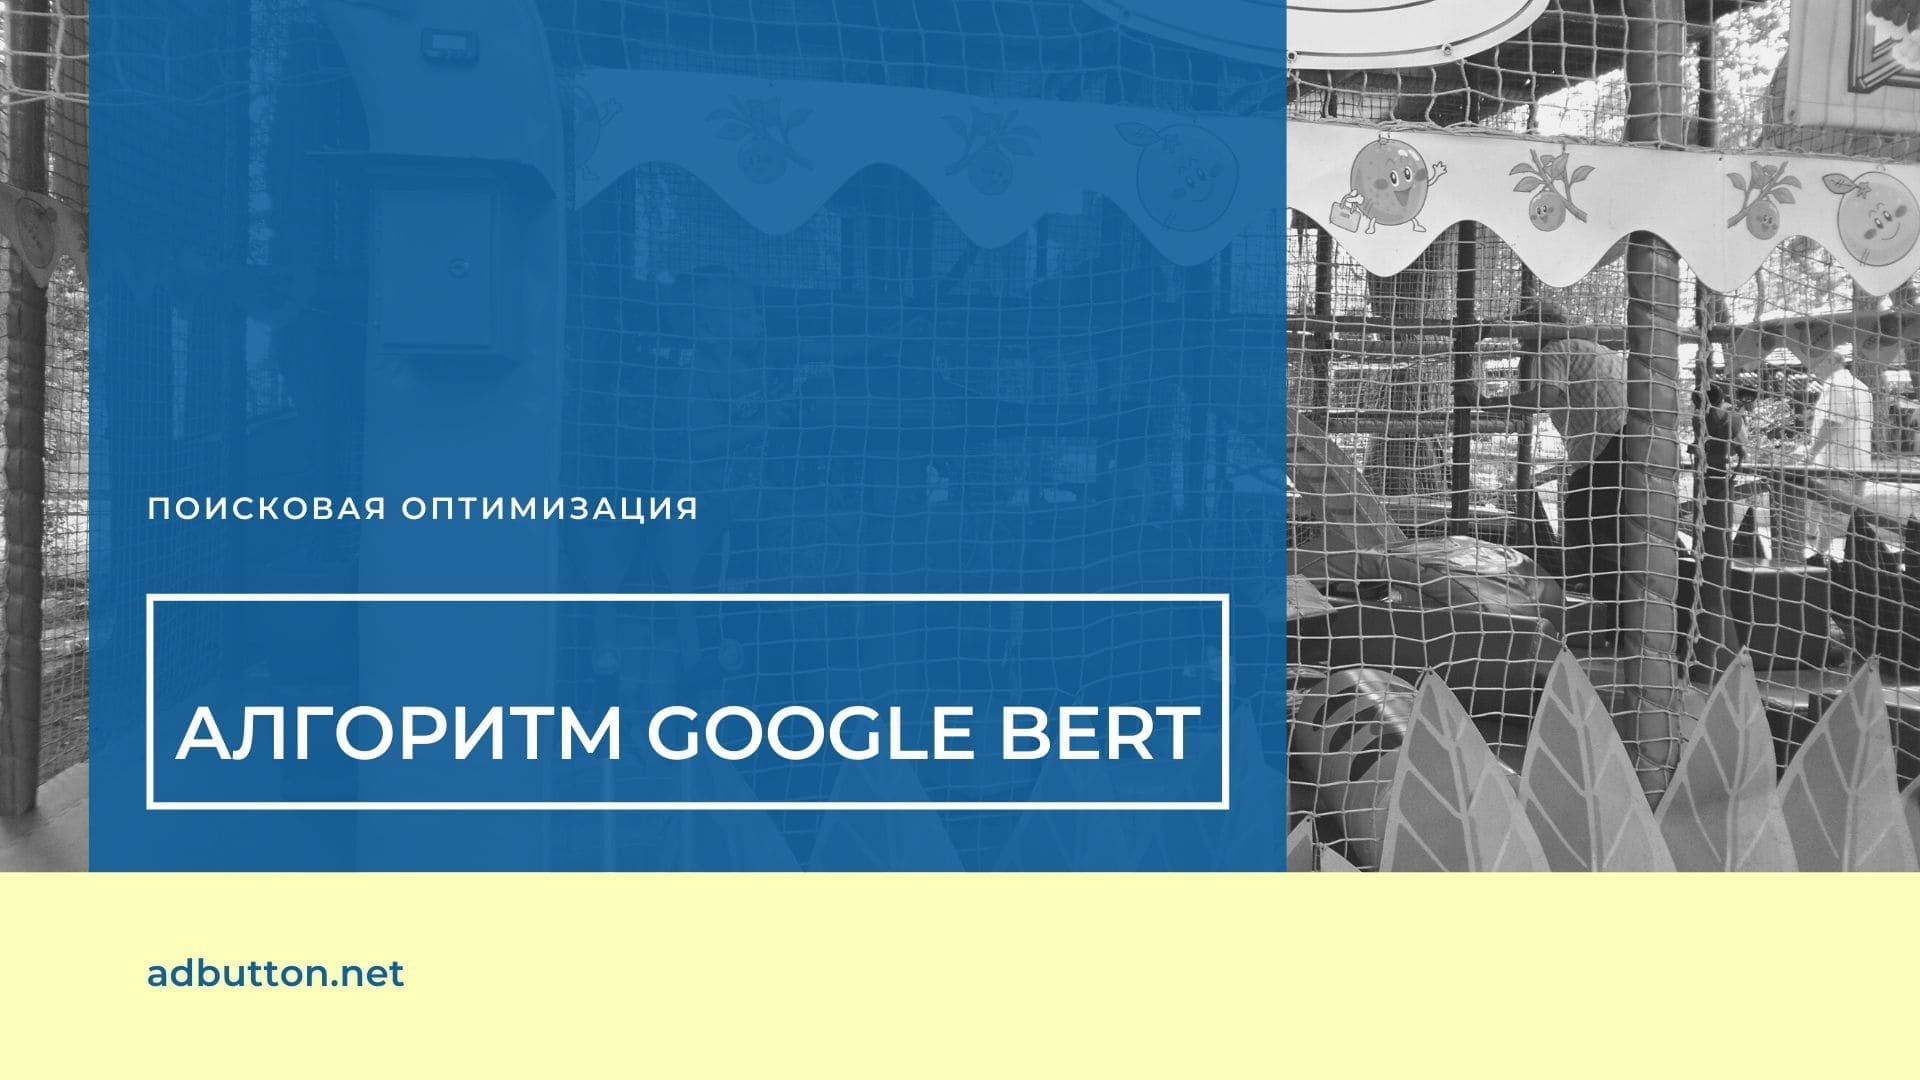 Алгоритм Google BERT: советы маркетологам и владельцам сайтов